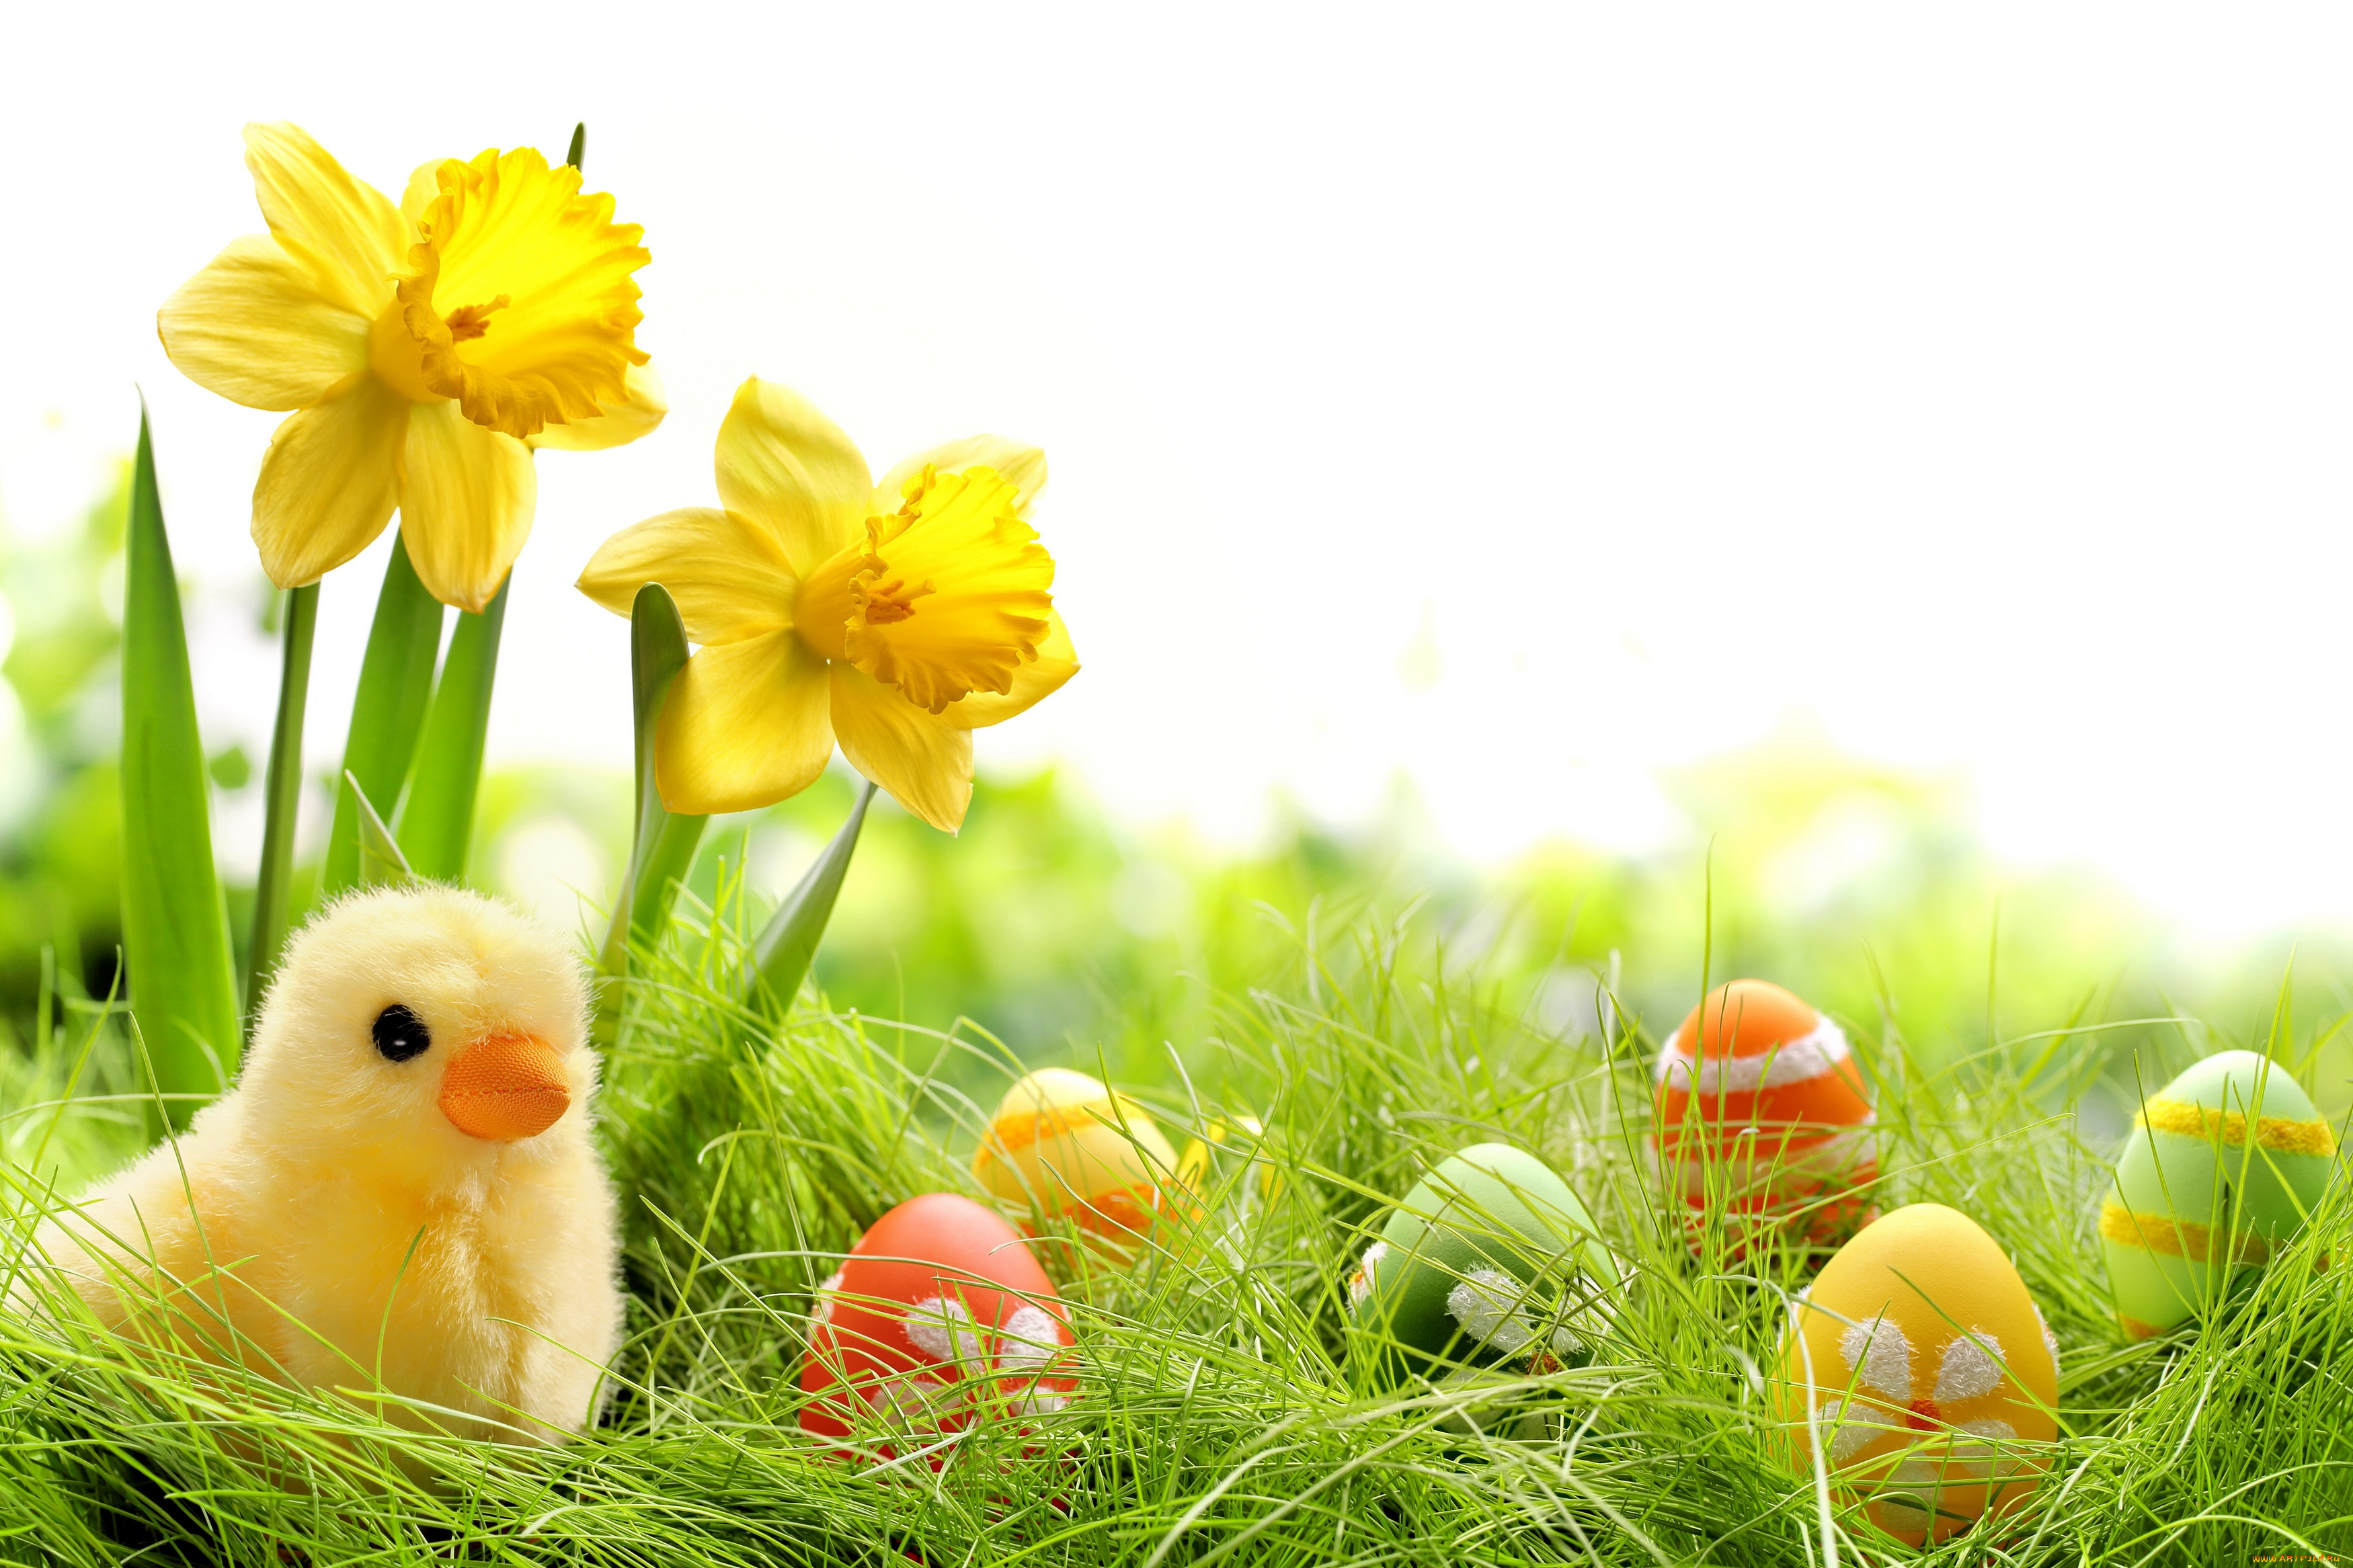 праздничные, пасха, трава, крашеные, нарциссы, spring, яйца, chik, springer, easter, grass, цветы, весна, colorful, daffodils, flowers, eggs